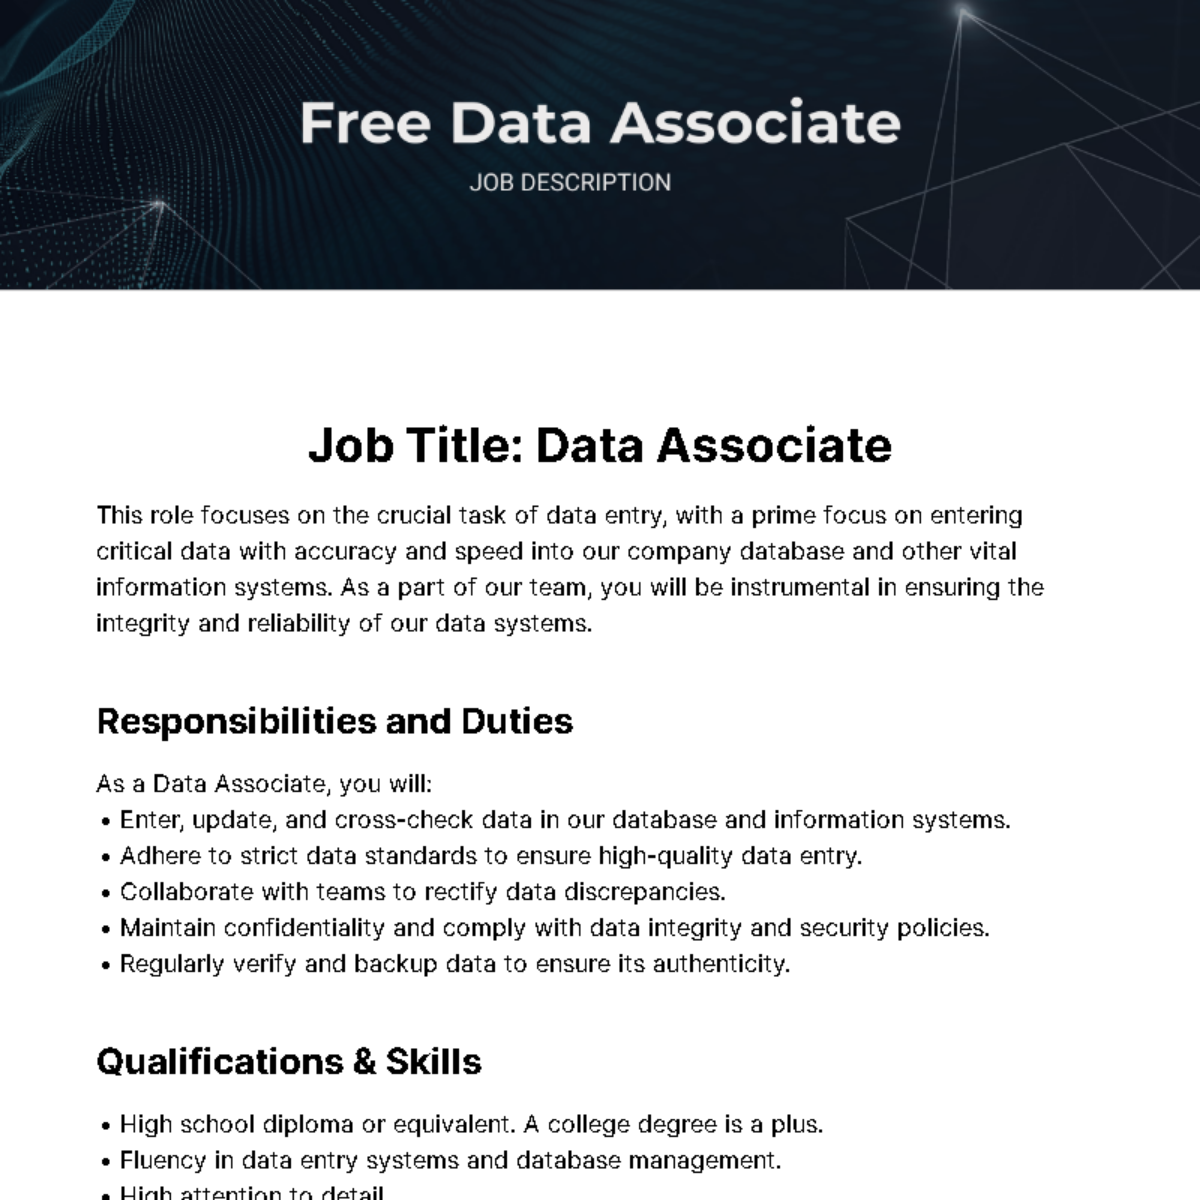 Free Data Associate Job Description Template